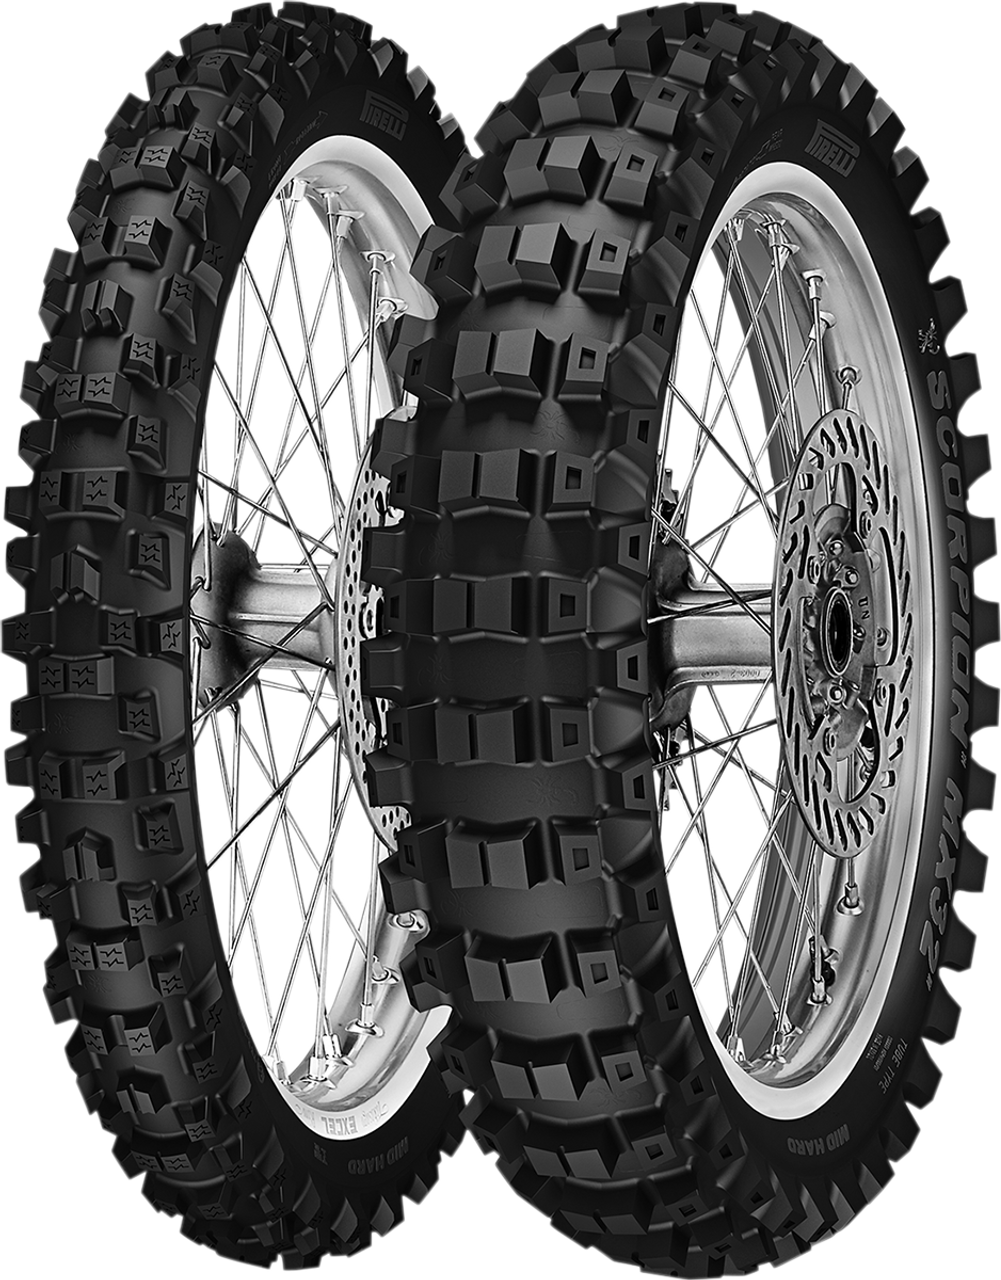 Pirelli Tire - MX32 - 90/100-21